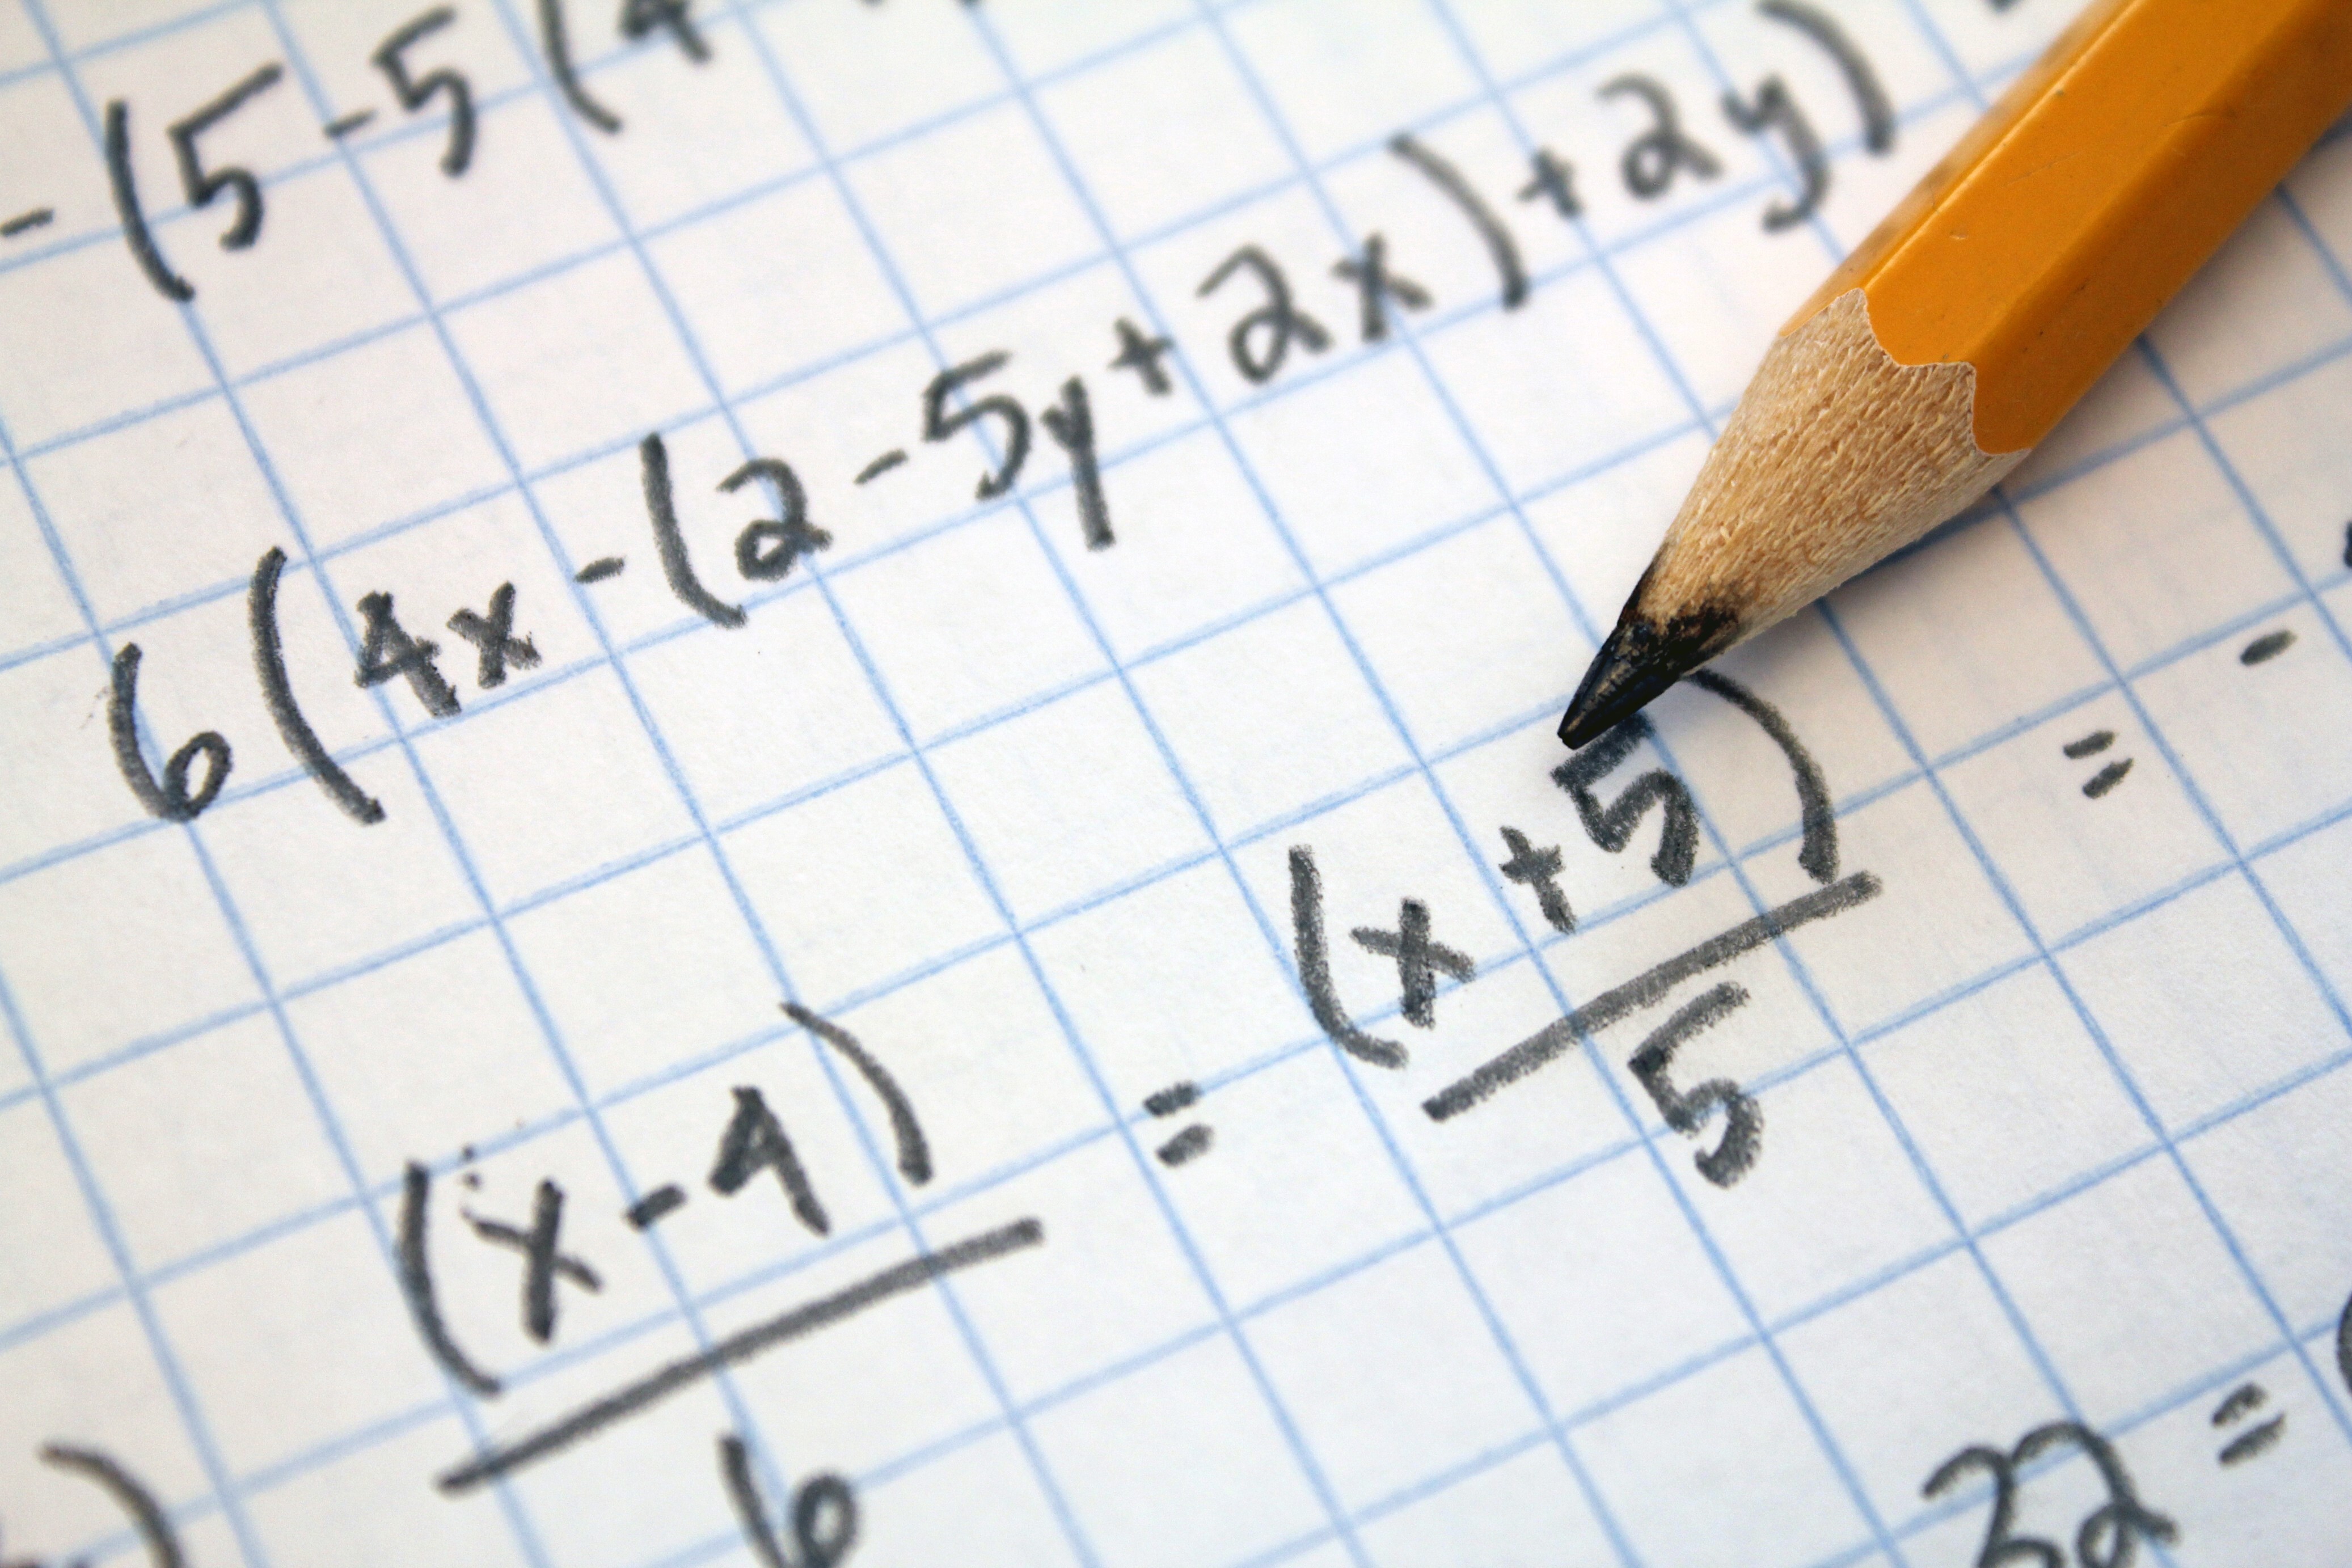 Olimpíada de Matemática aplica prova para 1,5 milhão de estudantes